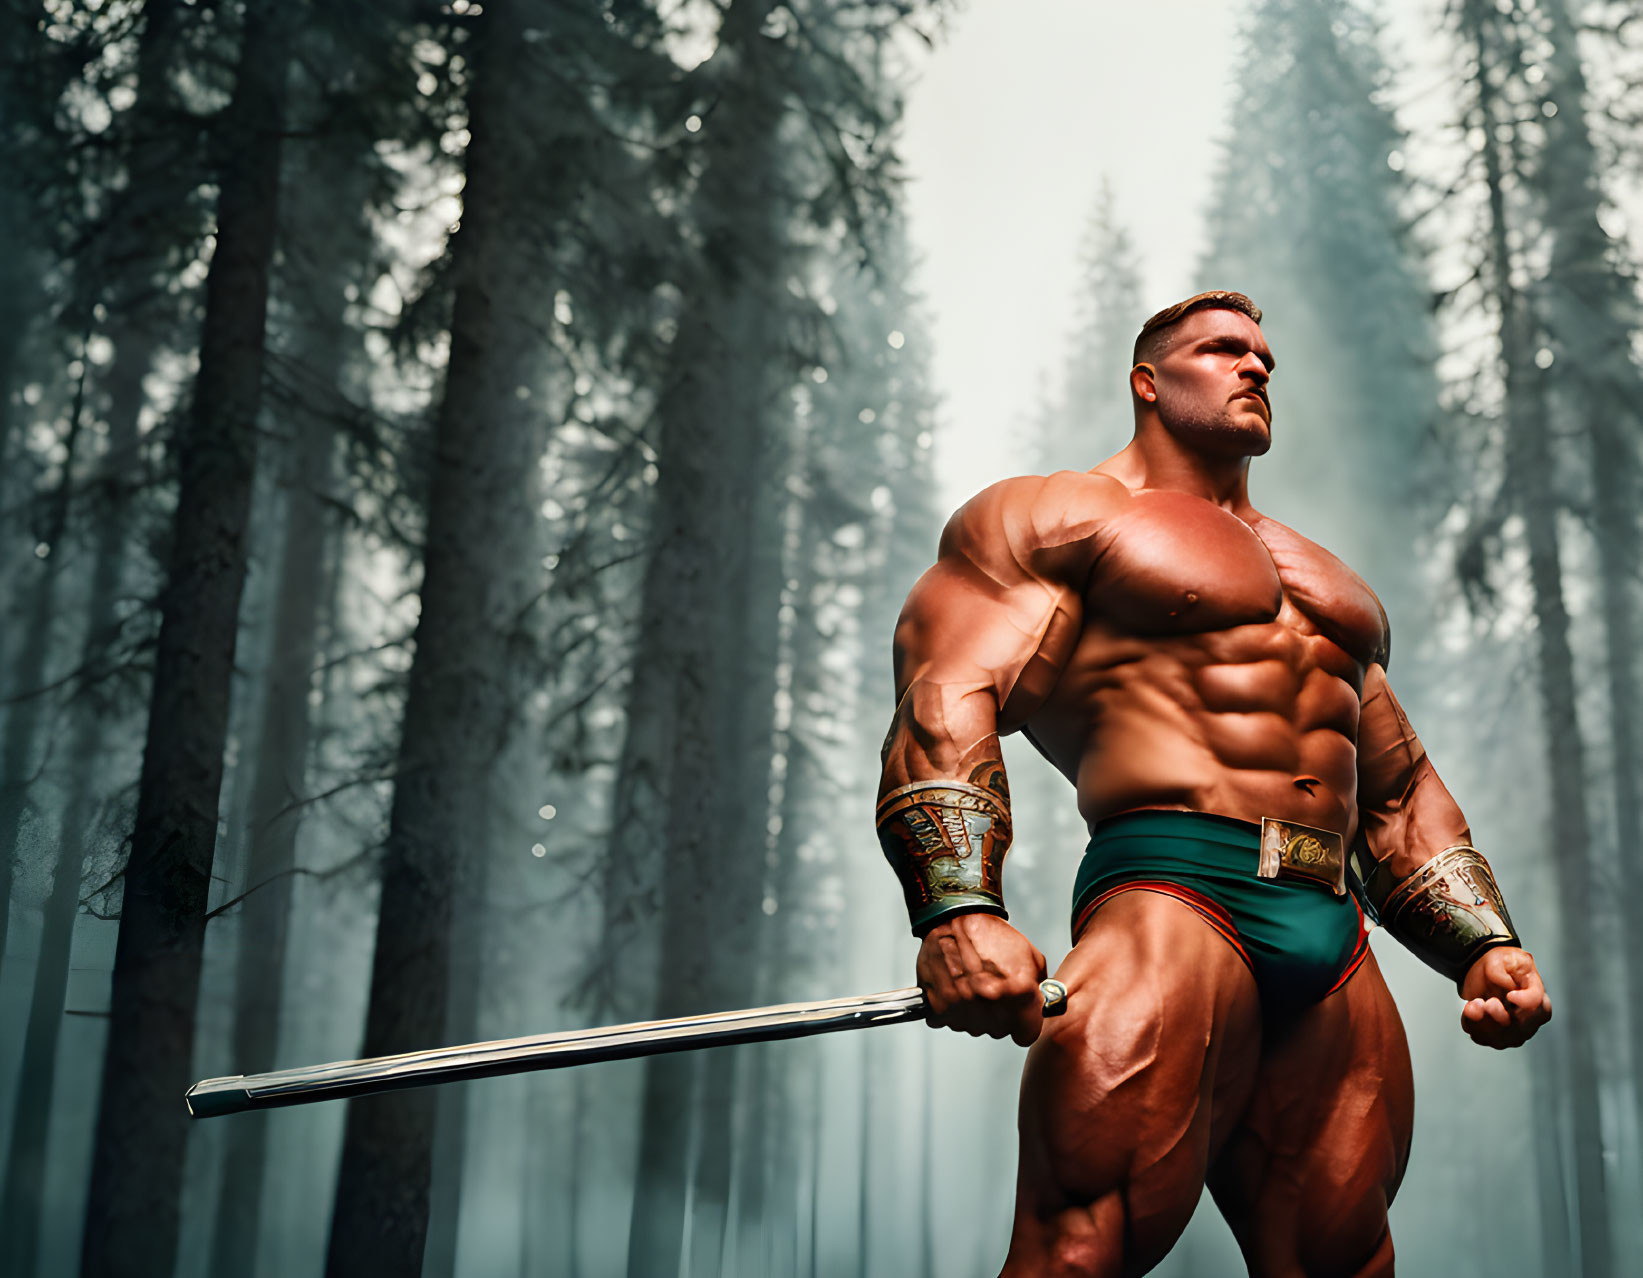 Muscular man in green trunks wields sword in misty forest